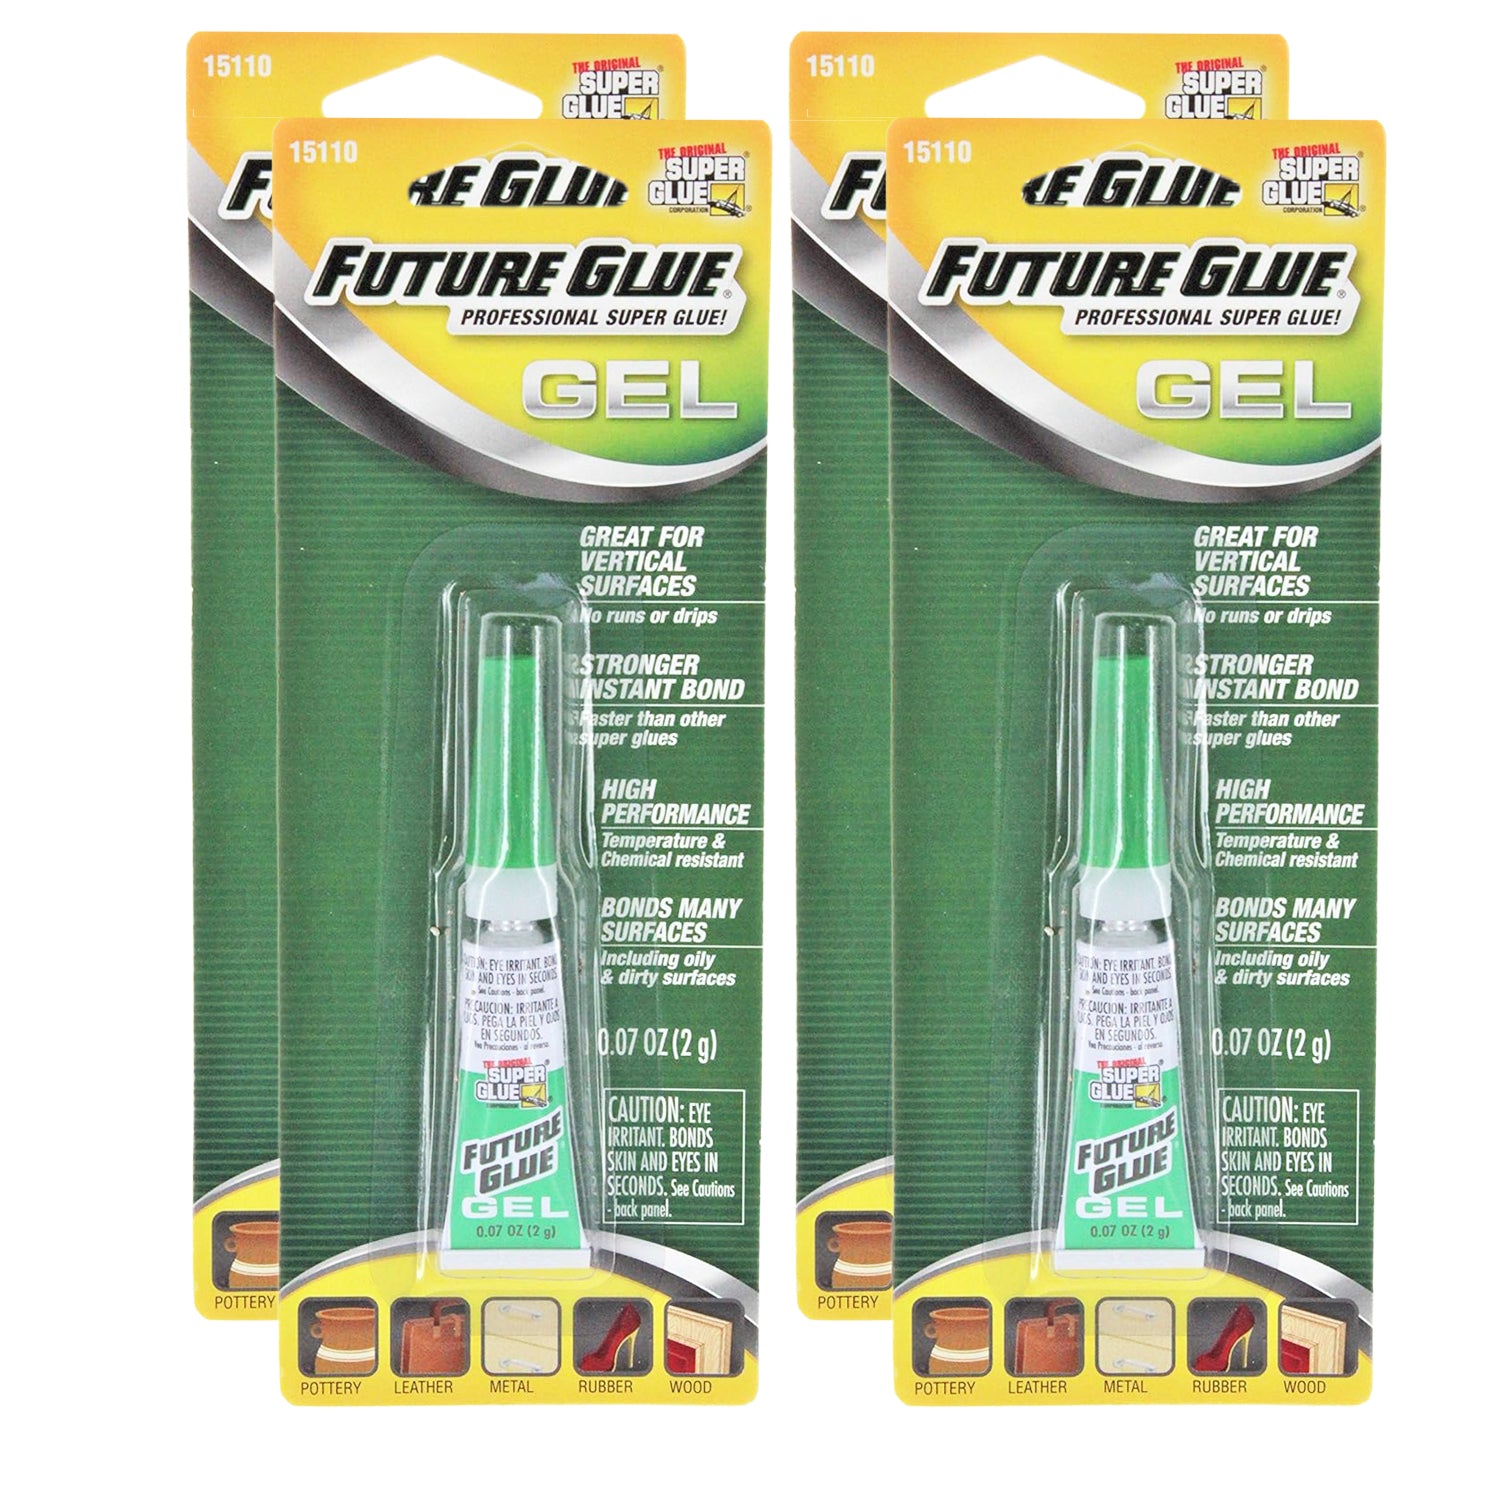 The Original Super Glue, Future Glue Gel, 0.07 oz - Ultra Strong Glue Gel for Plastic, Wood, Ceramic Repair - Precision Bonding with Future Glue Gel F